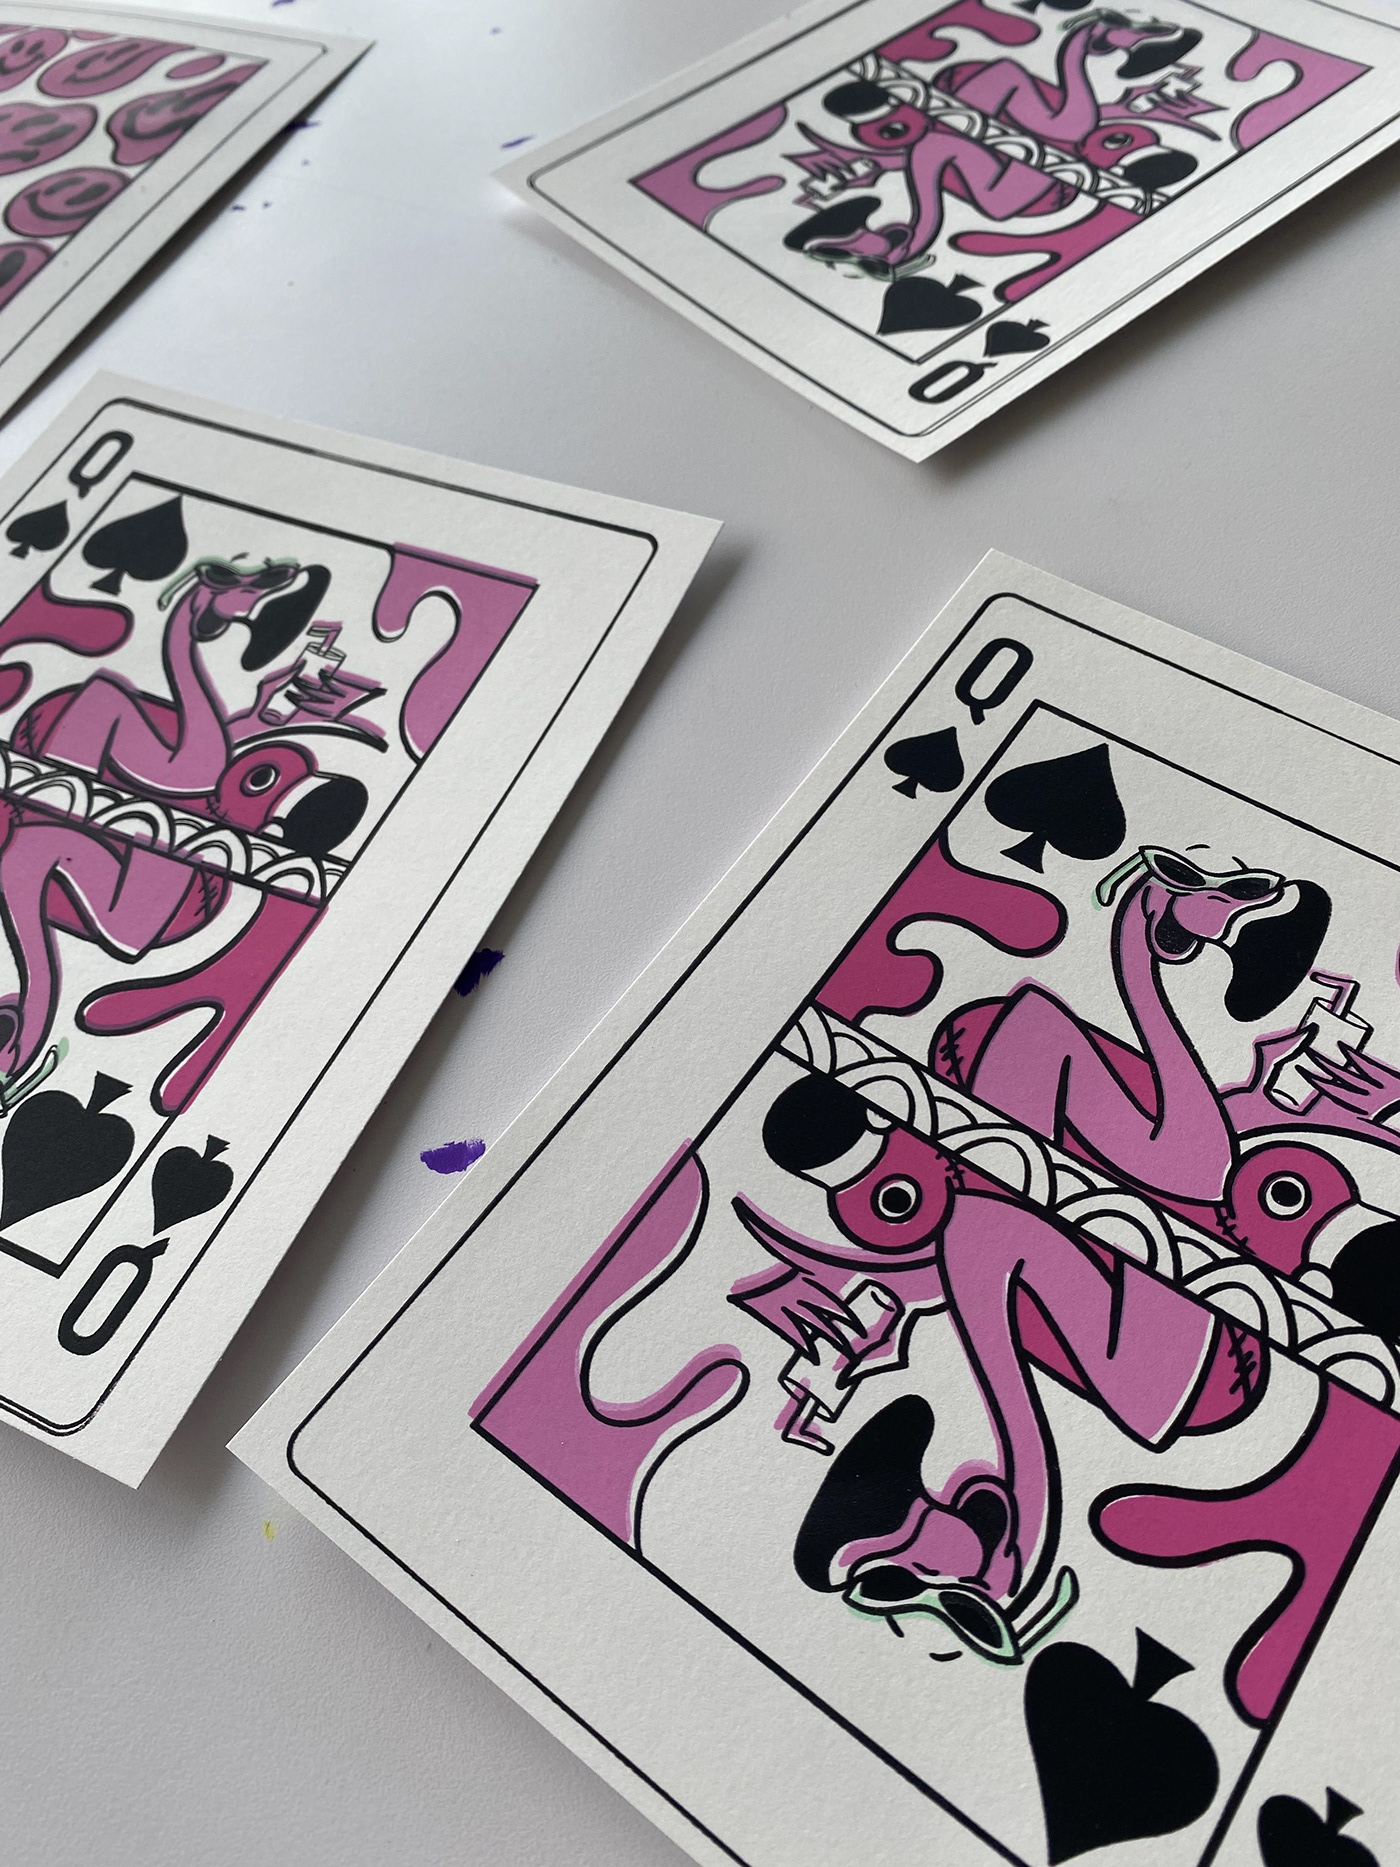 deck of cards flamingo Queen of spades screen print smiley face